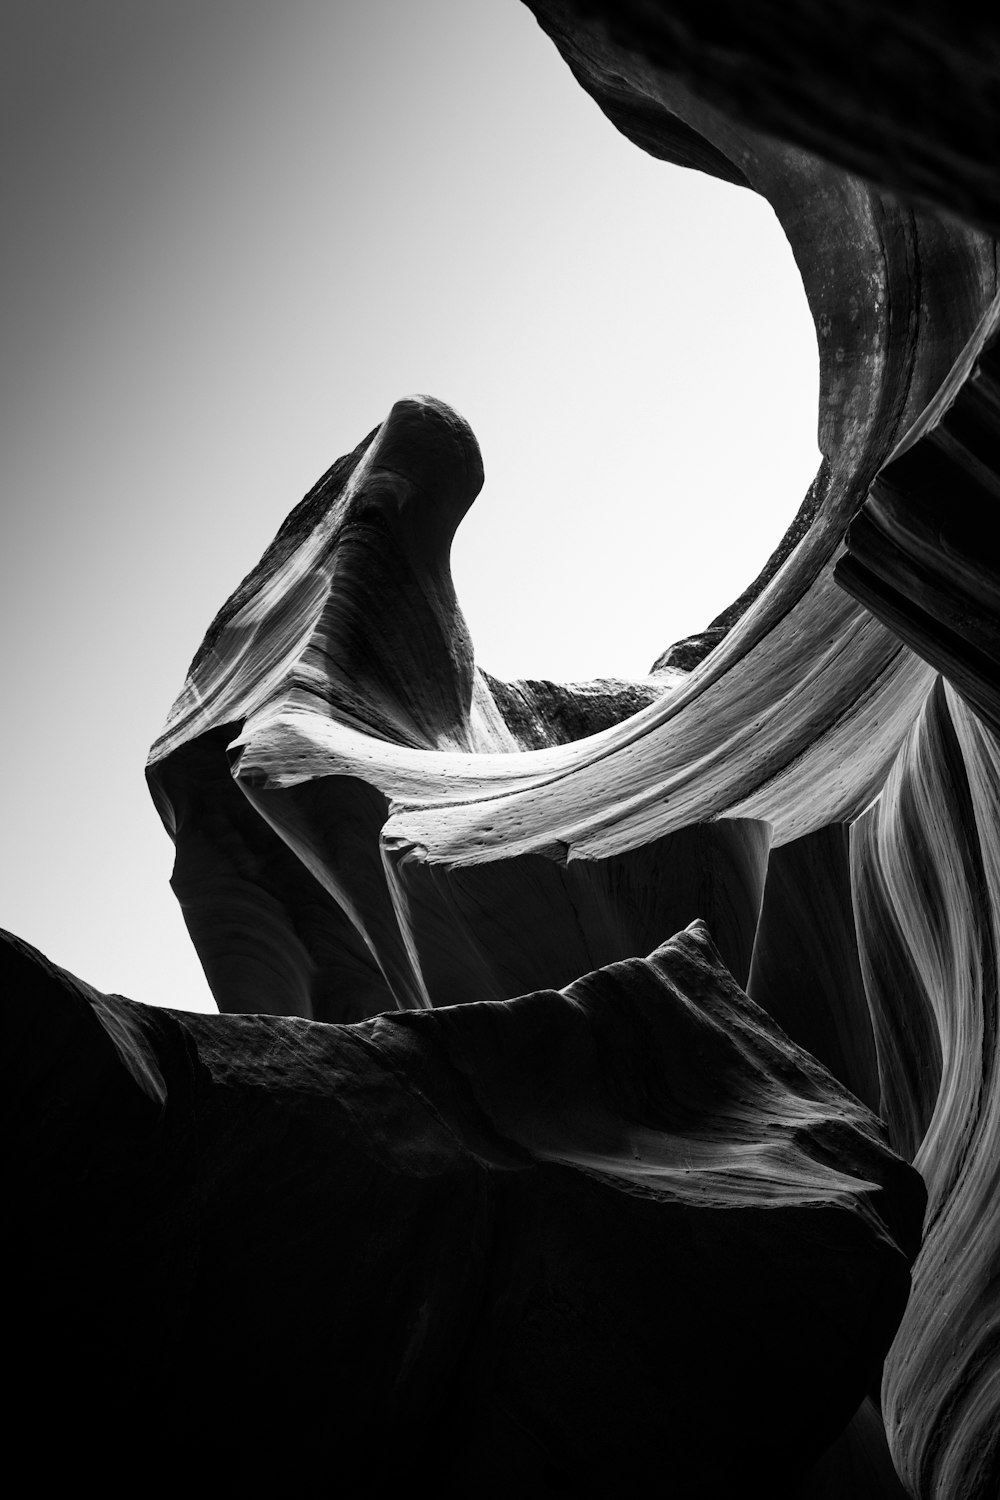 Una foto en blanco y negro de una formación rocosa